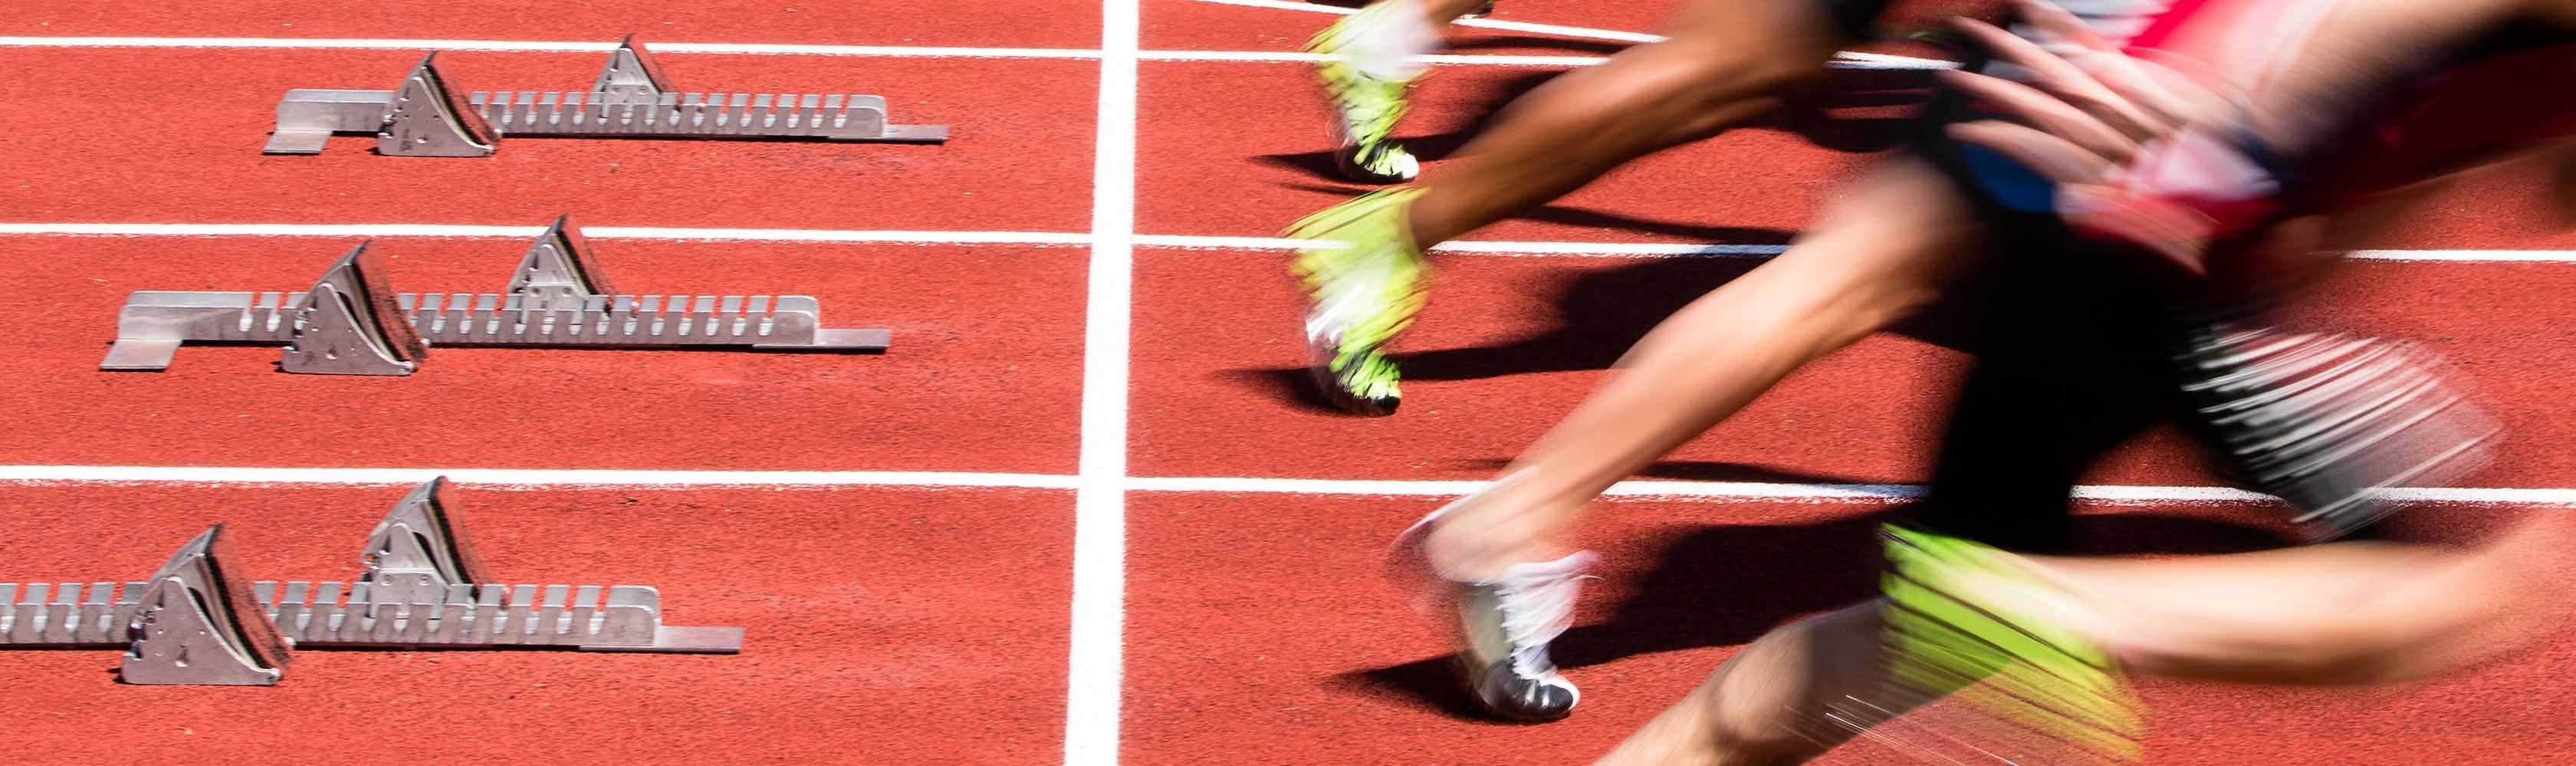 Signal de départ d’un 100 m. Le temps de réaction n’est pas uniquement décisif dans le sport.